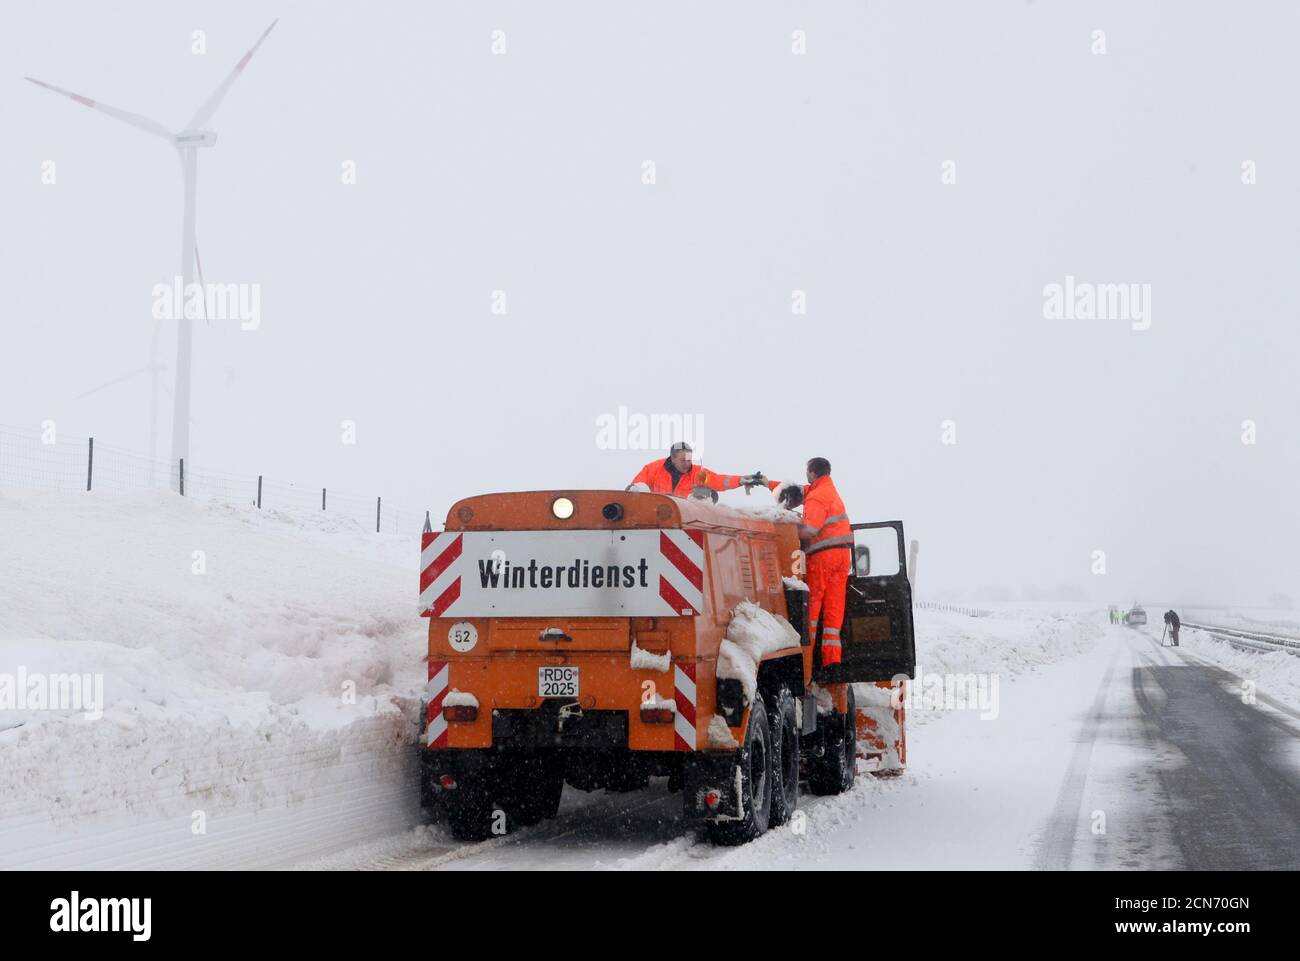 Auf einem durch Schneeverwehungen gesperrten Abschnitt der Autobahn A20 zwischen Guetzkow und Greifswald reinigen die Arbeiter am 11. Januar 2010 einen Schneepflug. Schnee und eisige Witterung störten am Sonntag die Fahrt durch Europa, so dass Hunderte von Autofahrern im nordöstlichen Bundesland Mecklenburg-Vorpommern ihre Autos aufgeben mussten. Wo ein Fuß von Neuschnee fiel und andere in ihren Autos für Stunden auf der Autobahn A20 einfangen, weil normale Schneepflüge sie nicht erreichen konnten, sagten die Behörden. REUTERS/Thomas Peter (DEUTSCHLAND - Tags: UMWELTVERKEHR) Stockfoto